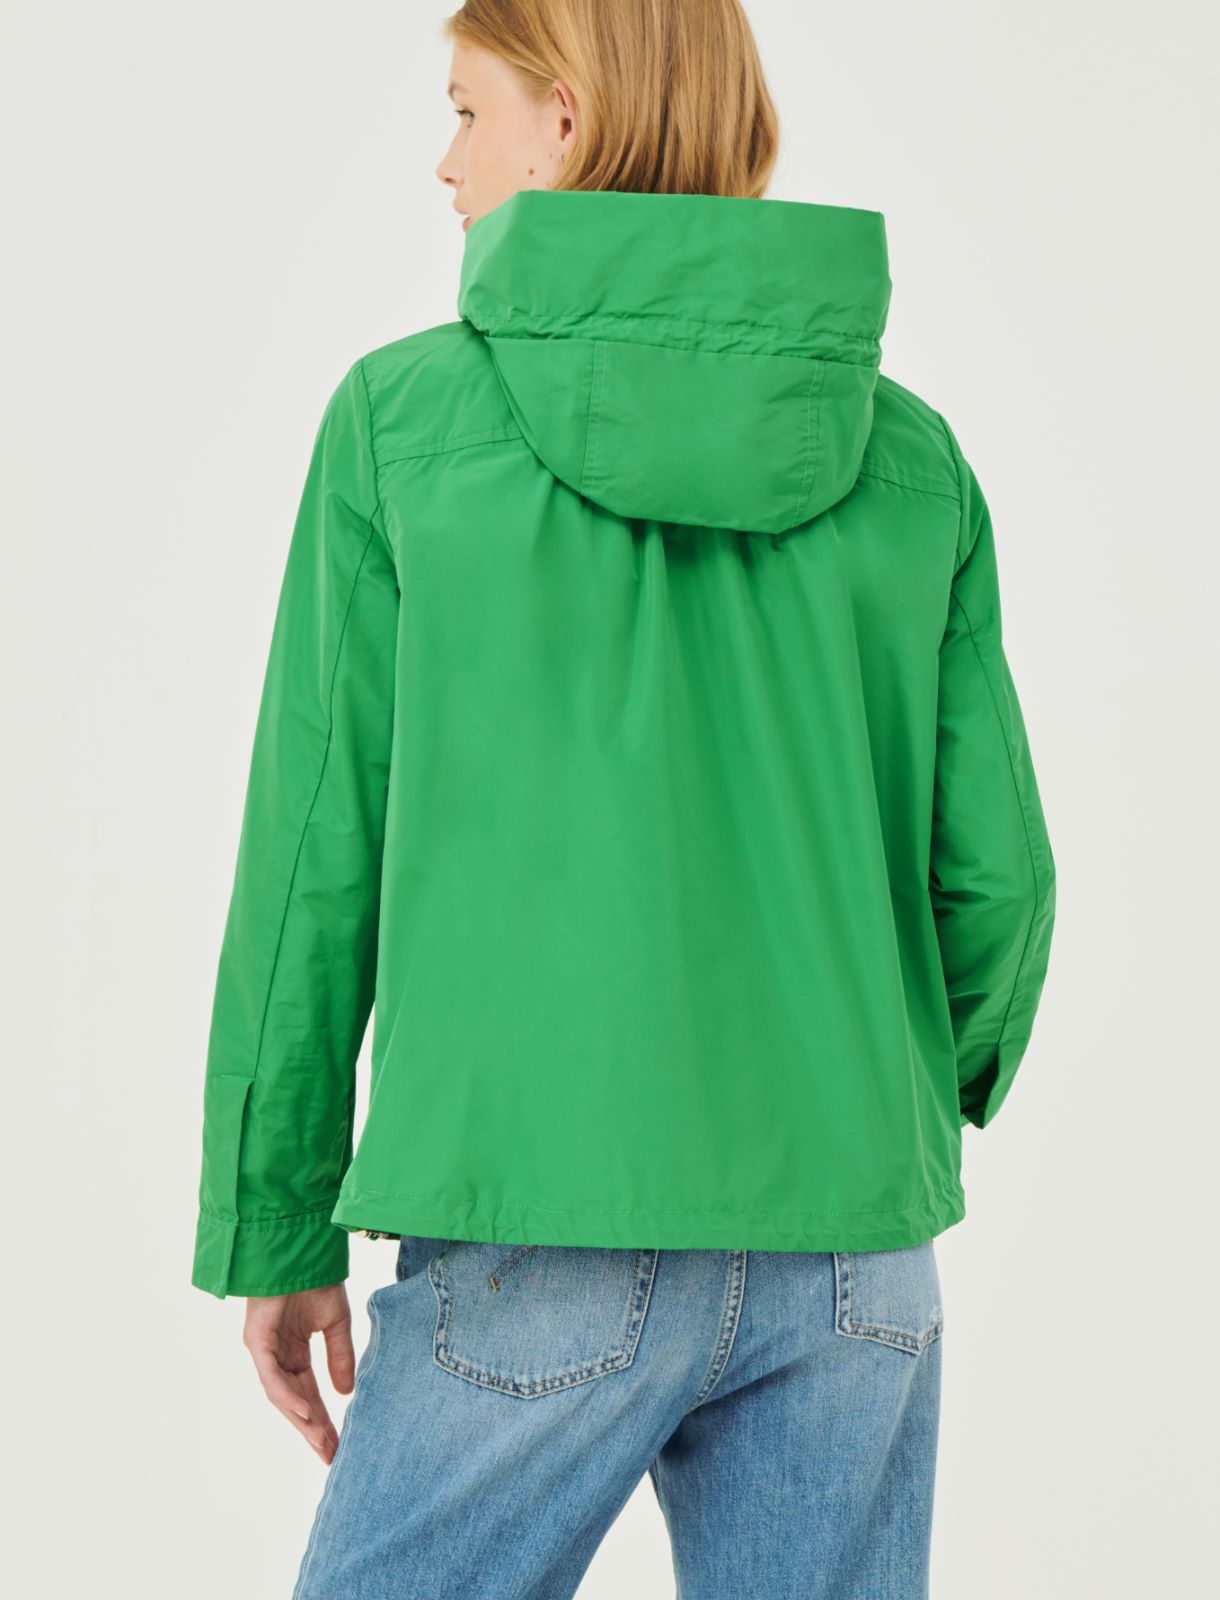 Hooded jacket - Green - Marella - 2